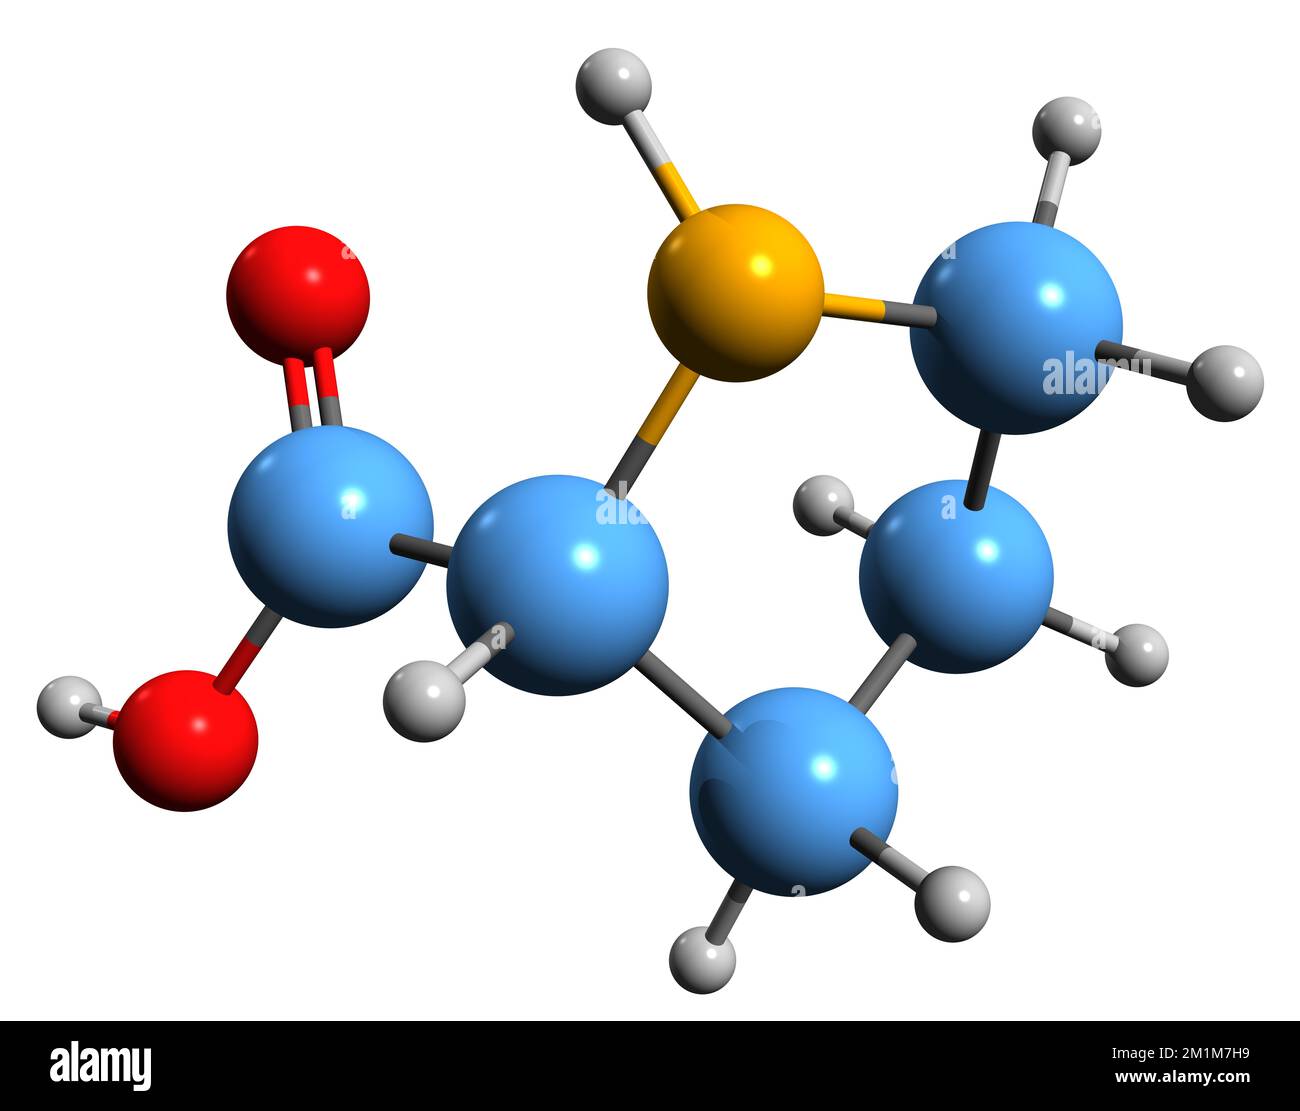 3D immagine della formula scheletrica Proline - struttura chimica molecolare dell'amminoacido proteinogeno isolato su sfondo bianco Foto Stock